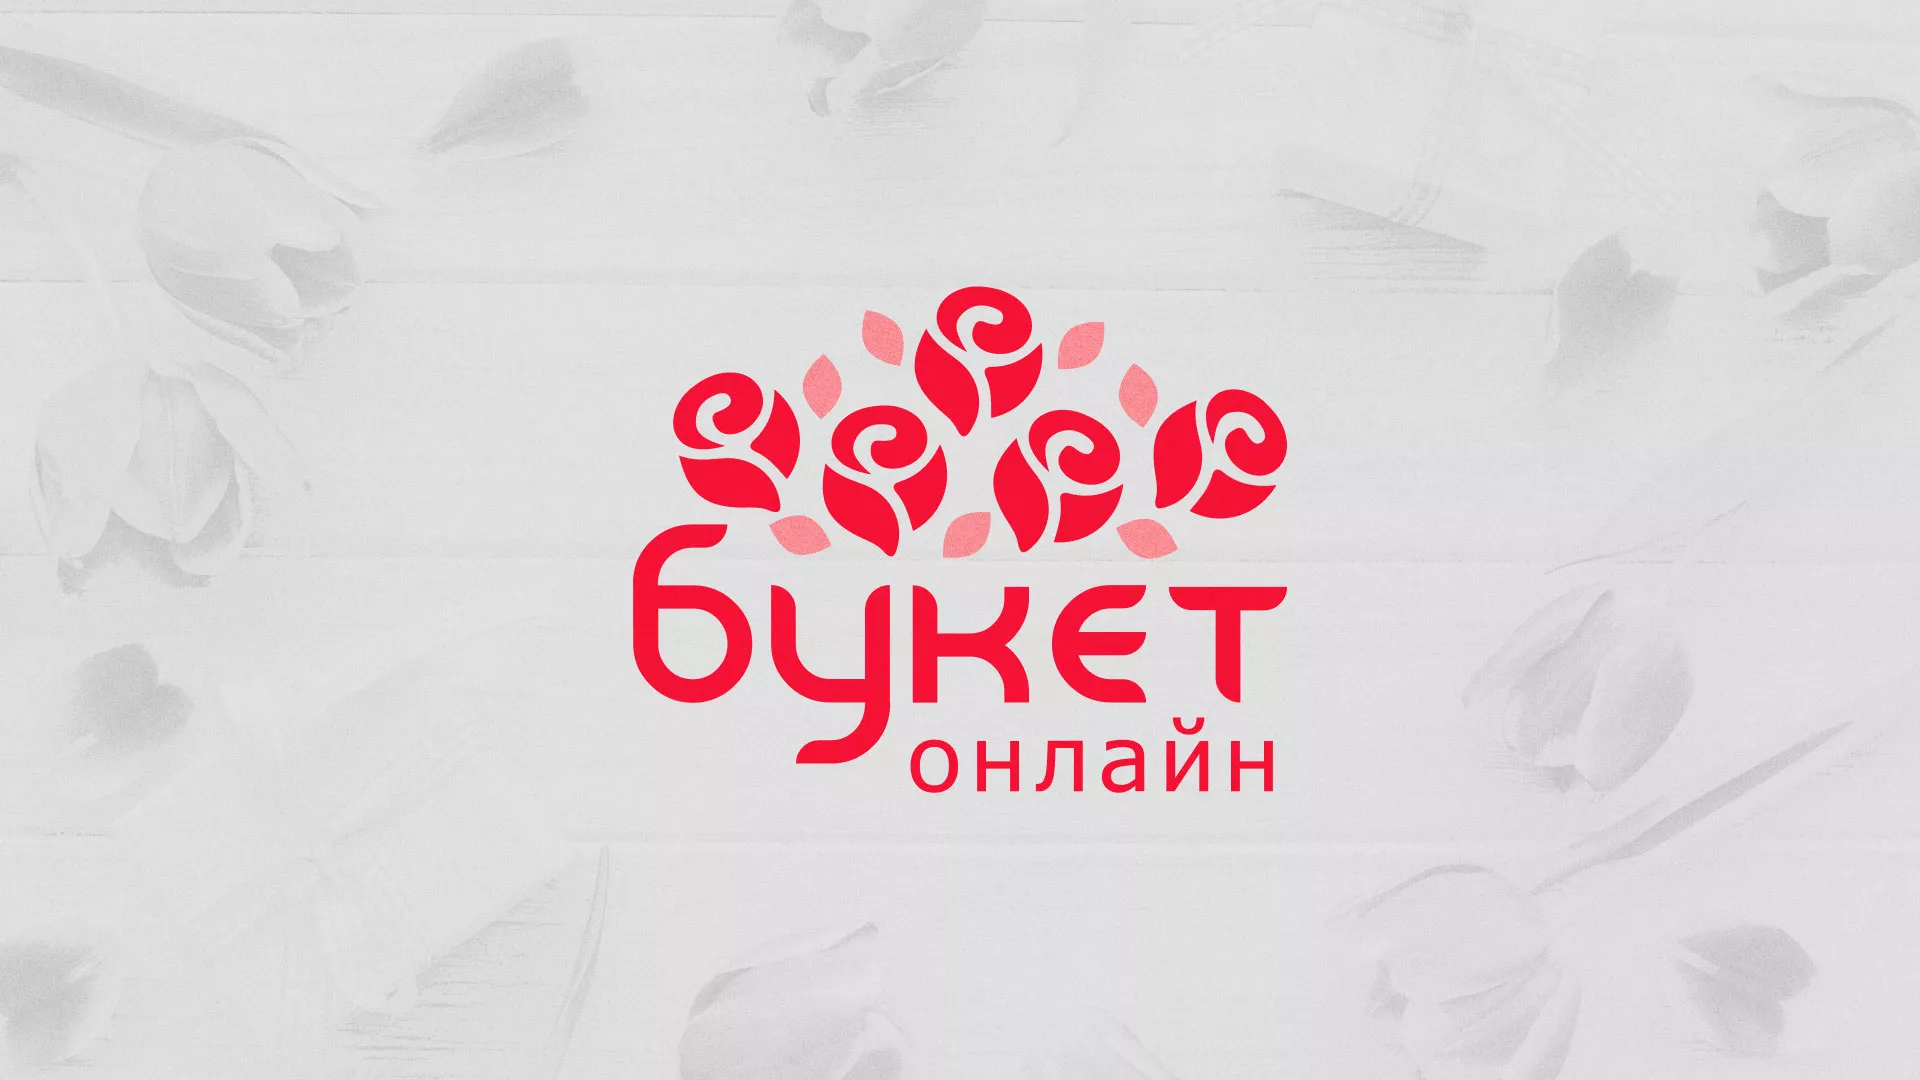 Создание интернет-магазина «Букет-онлайн» по цветам в Ярославле